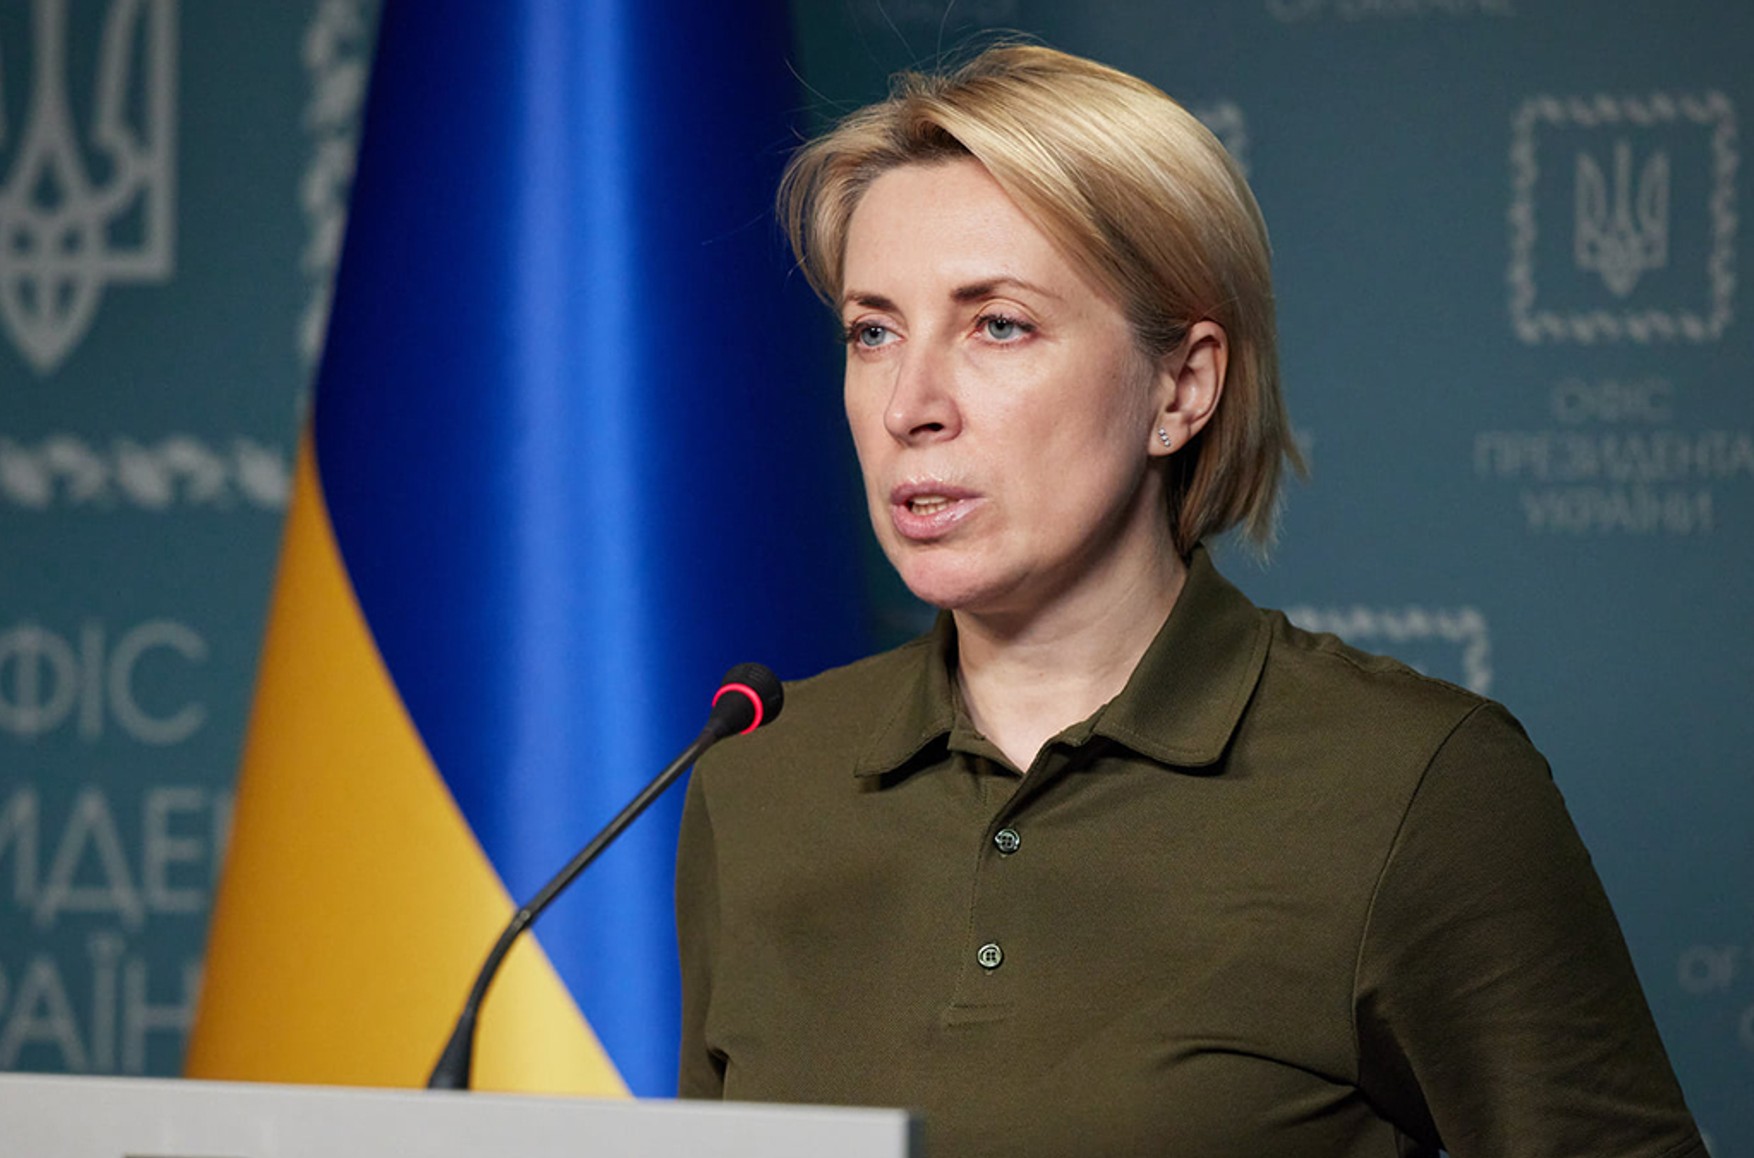 Вице-премьер Украины: Россия пыталась обменять украинских гражданских лиц на российских военнопленных. Это запрещено Женевской конвенцией